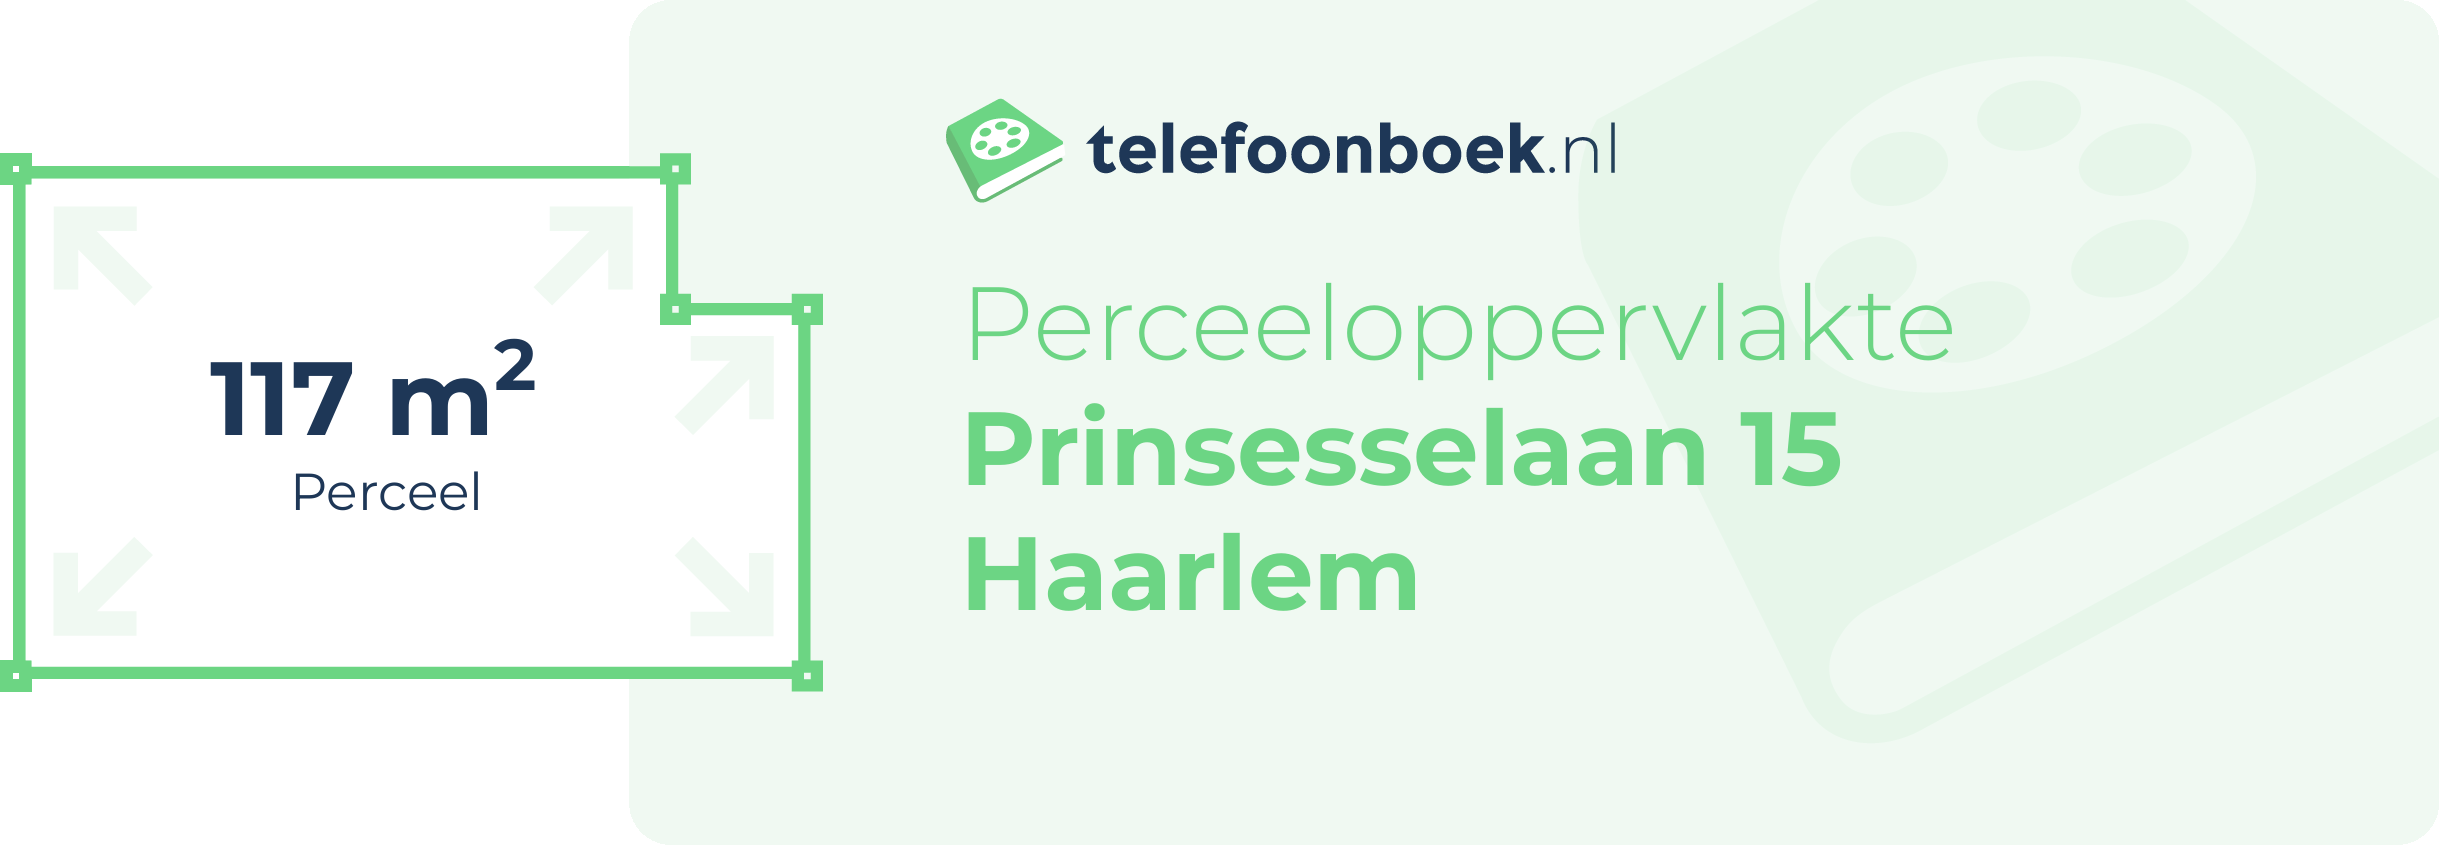 Perceeloppervlakte Prinsesselaan 15 Haarlem